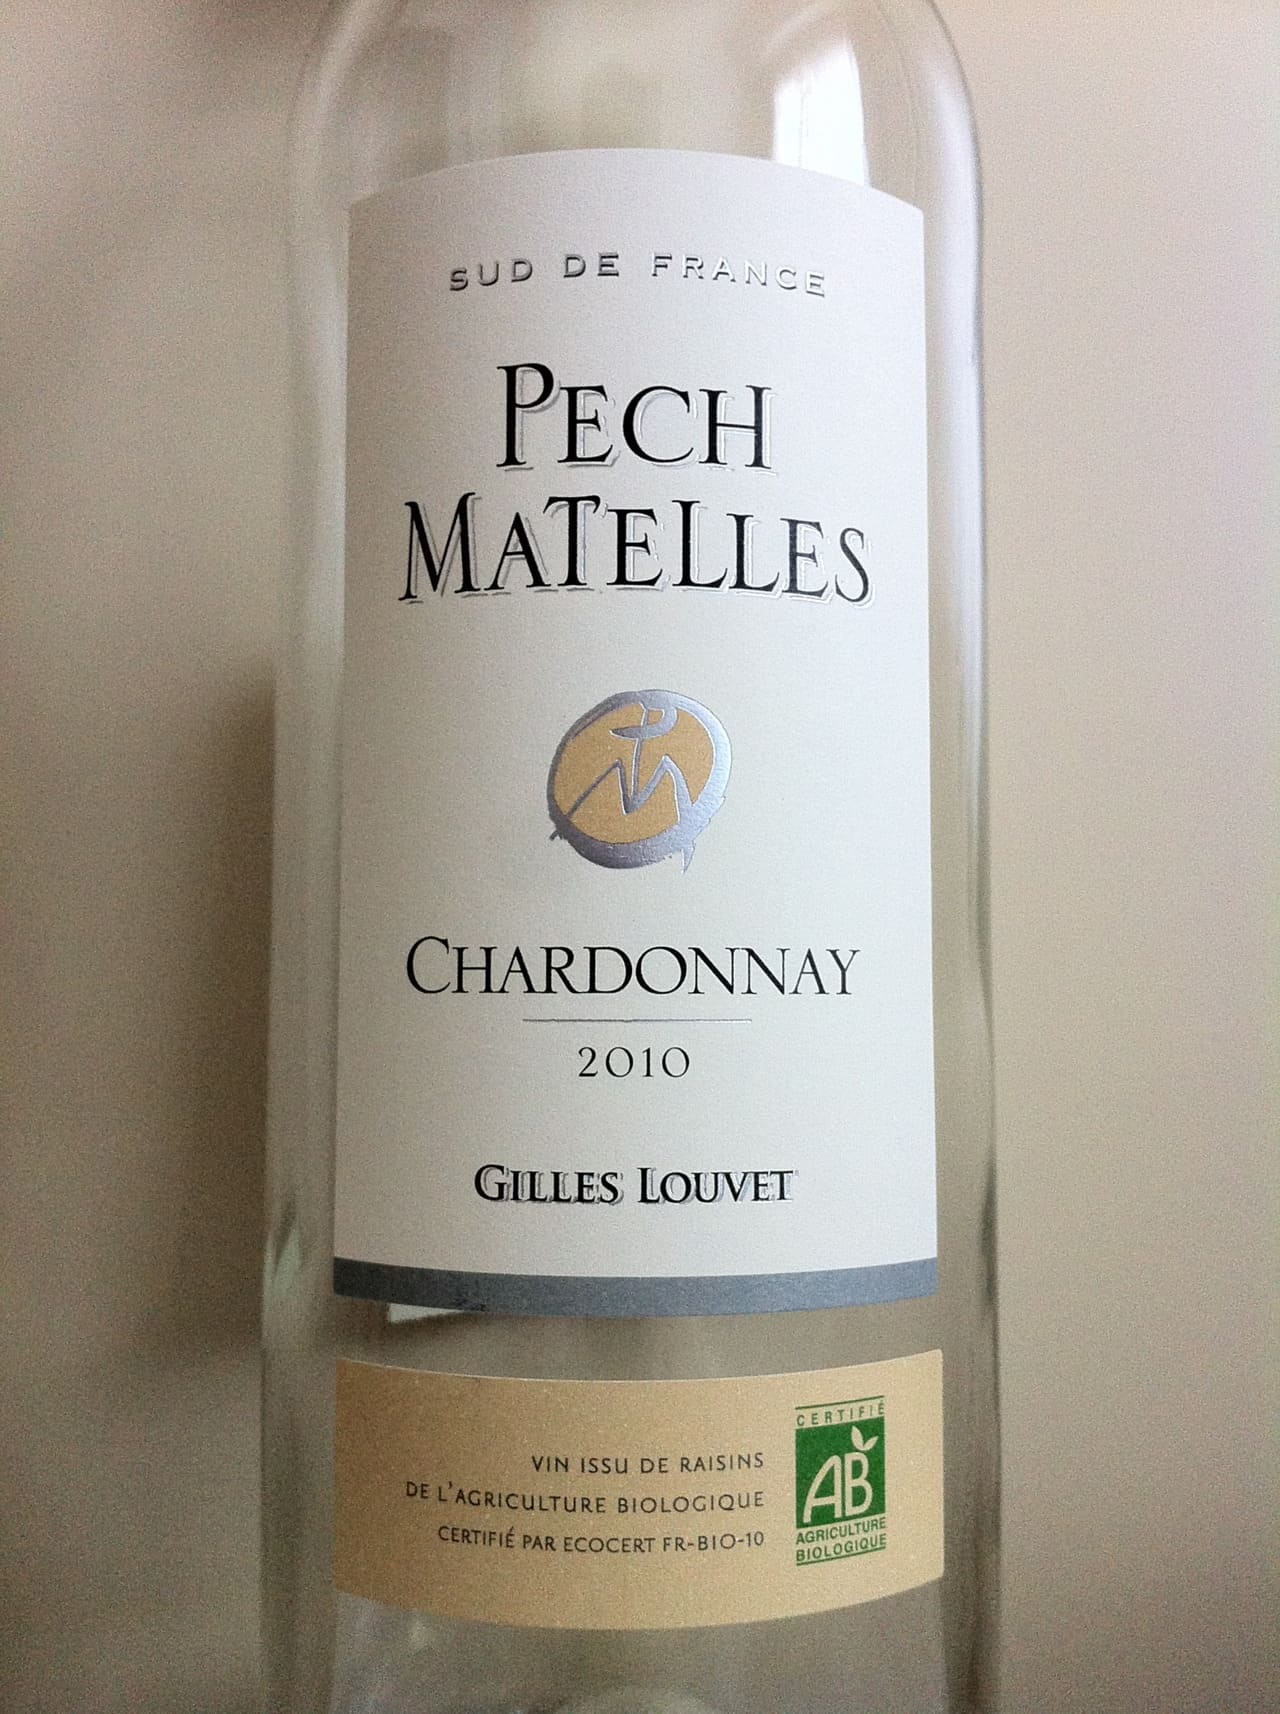 Gilles Louvet Pech Matelles Chardonnay